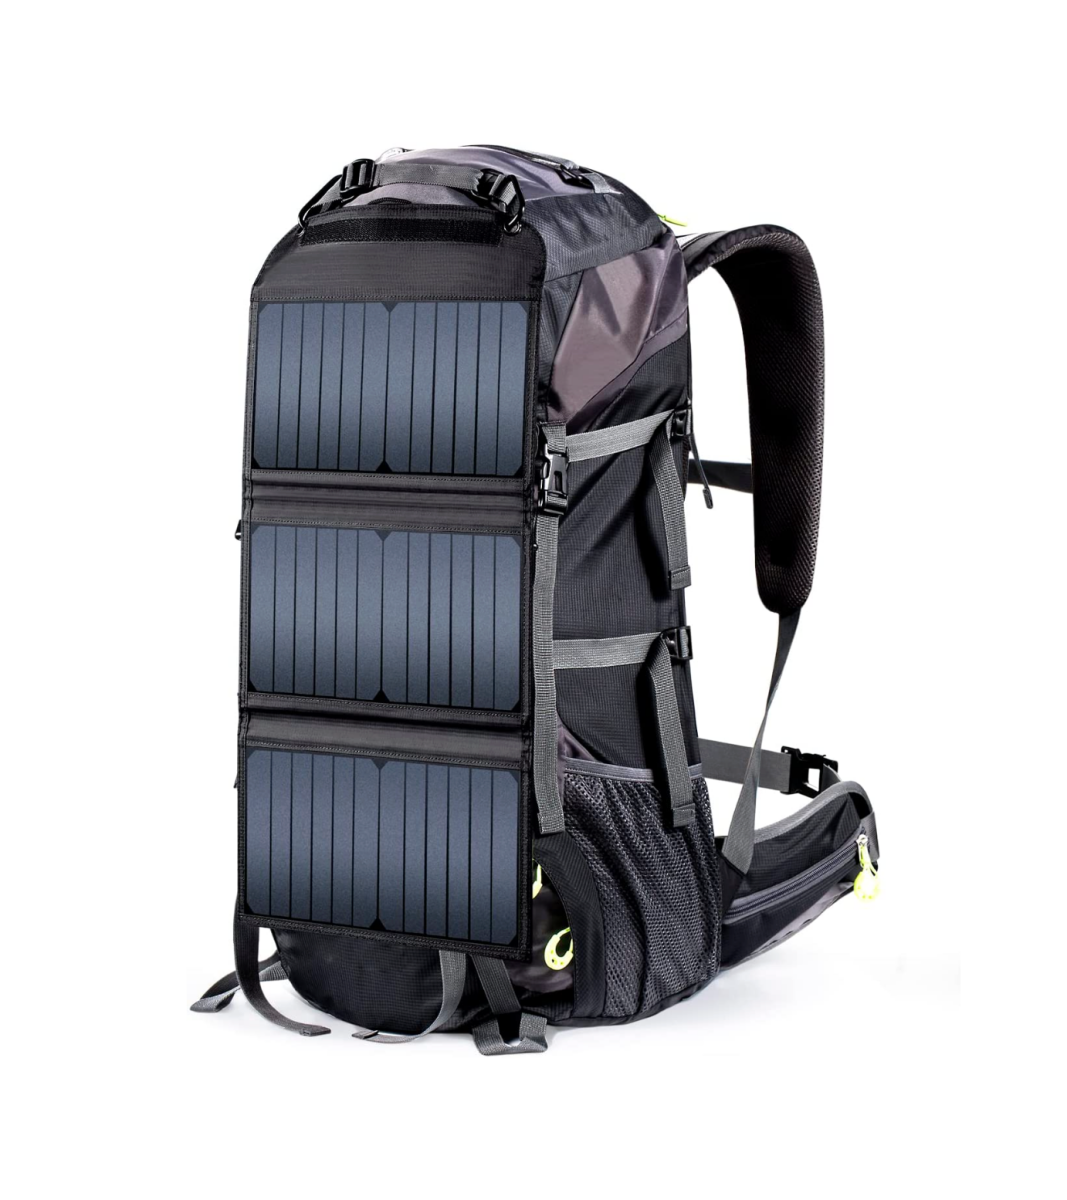 A gray ECEEN 20 Watts Solar Powered External Frame Hiking Backpack